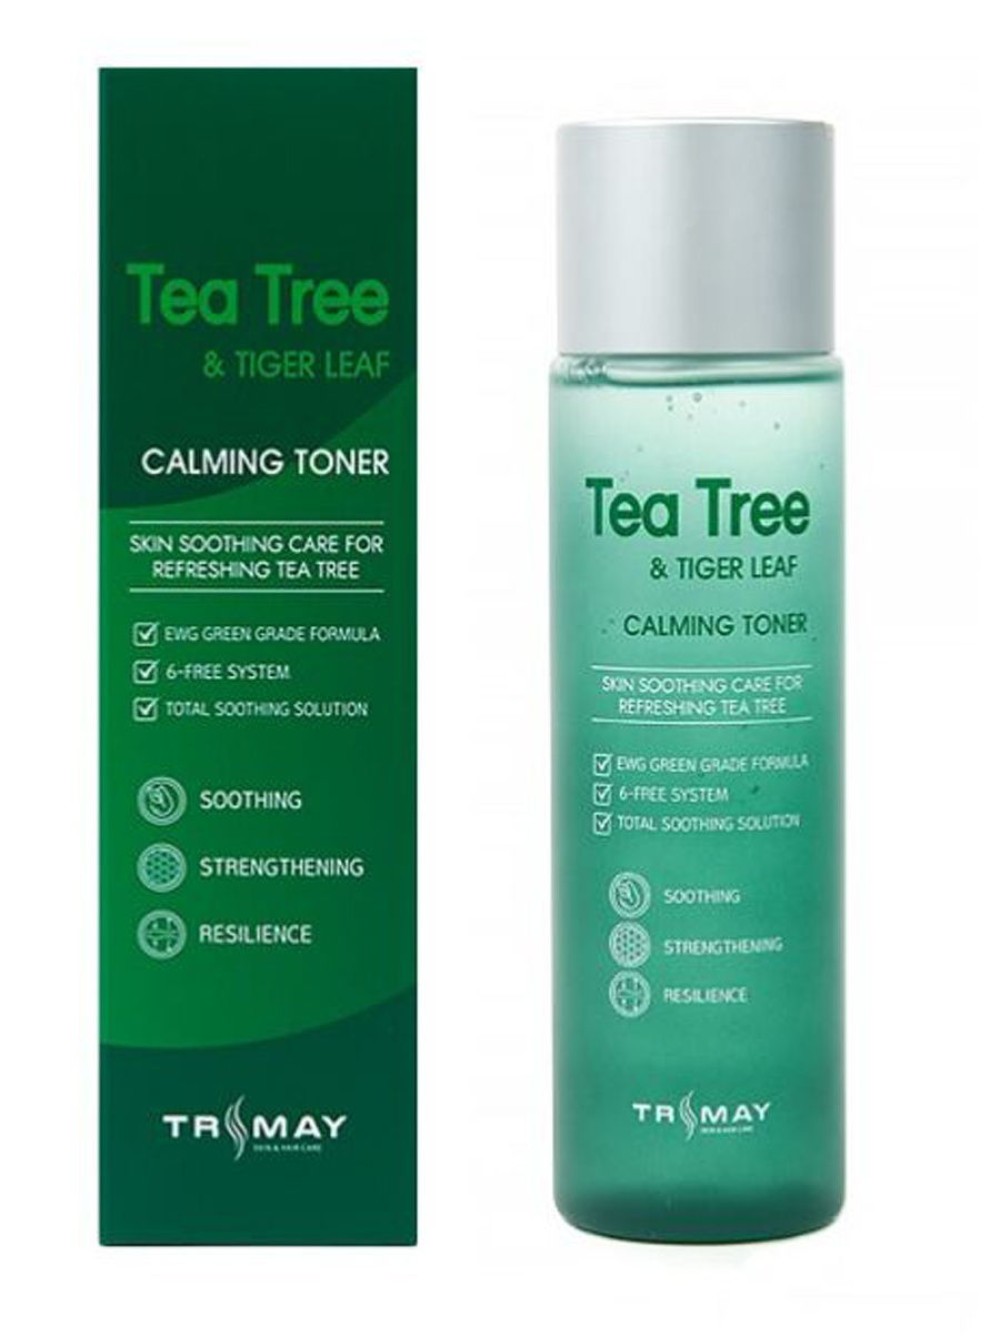 Тонер с чайным деревом. Тонер trimay Tea Tree. Тонер с чайным деревом trimay, 210мл. Trimay Tea Tree&Tiger Leaf Calming Toner 1gr. Trimay тонер для лица.